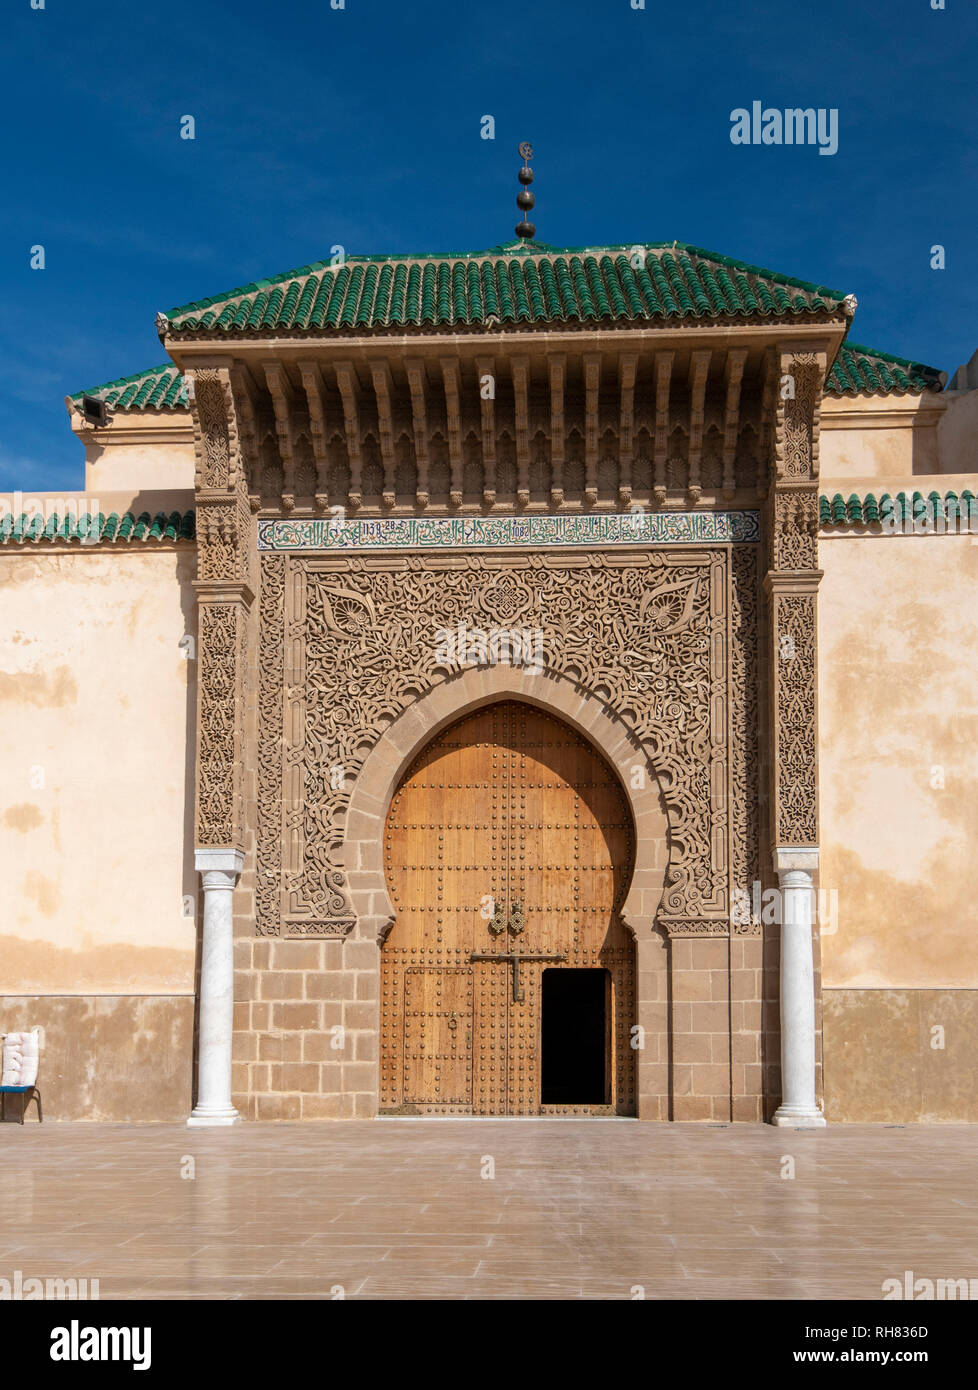 Die Tür der Mausoleum von Moulay Ismail in Meknes in Marokko. Mausoleum von Moulay Ismail ist ein Grab und Moschee. Eingang Stockfoto